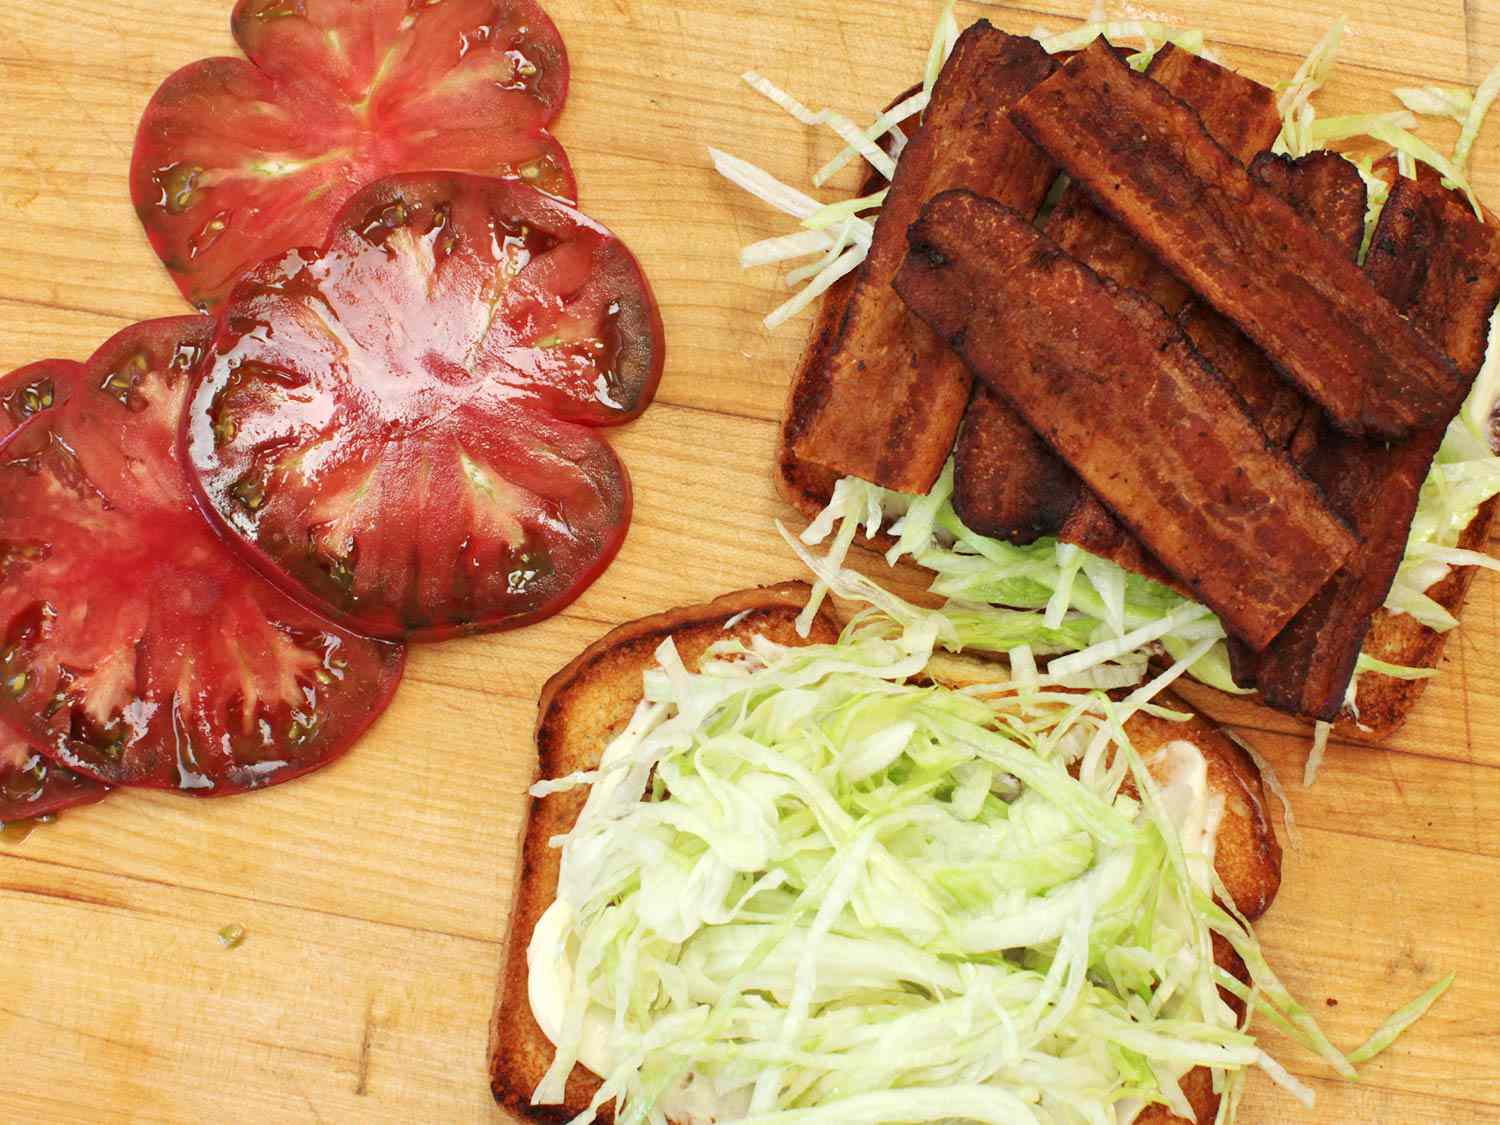 制作BLT三明治:将切片番茄放在一片涂有蛋黄酱和生菜丝的烤面包片旁边，另一片面包片上分层着培根和生菜